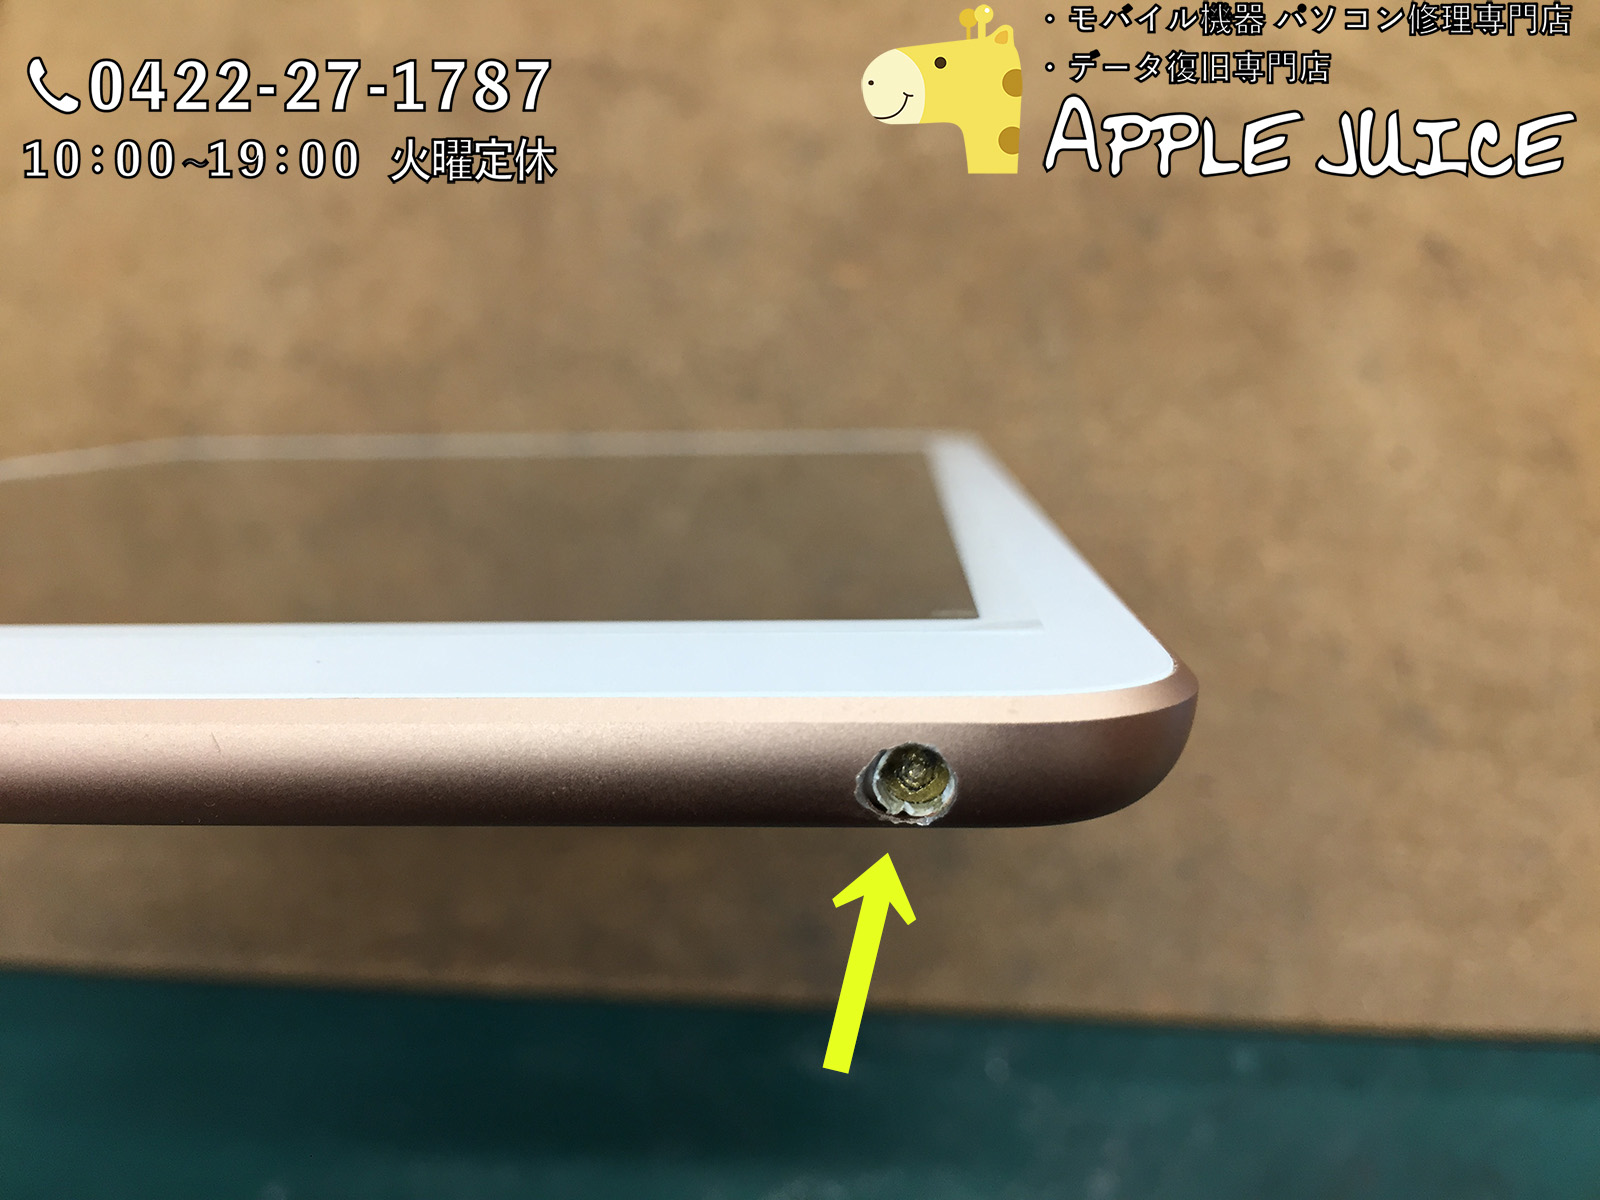 Ipad6のイヤホンジャックの修理 配送修理 イヤホンが折れた 取れない 抜けない Iphone Ipad Ipod Mac修理 データ復旧 基板修理 Applejuice吉祥寺店